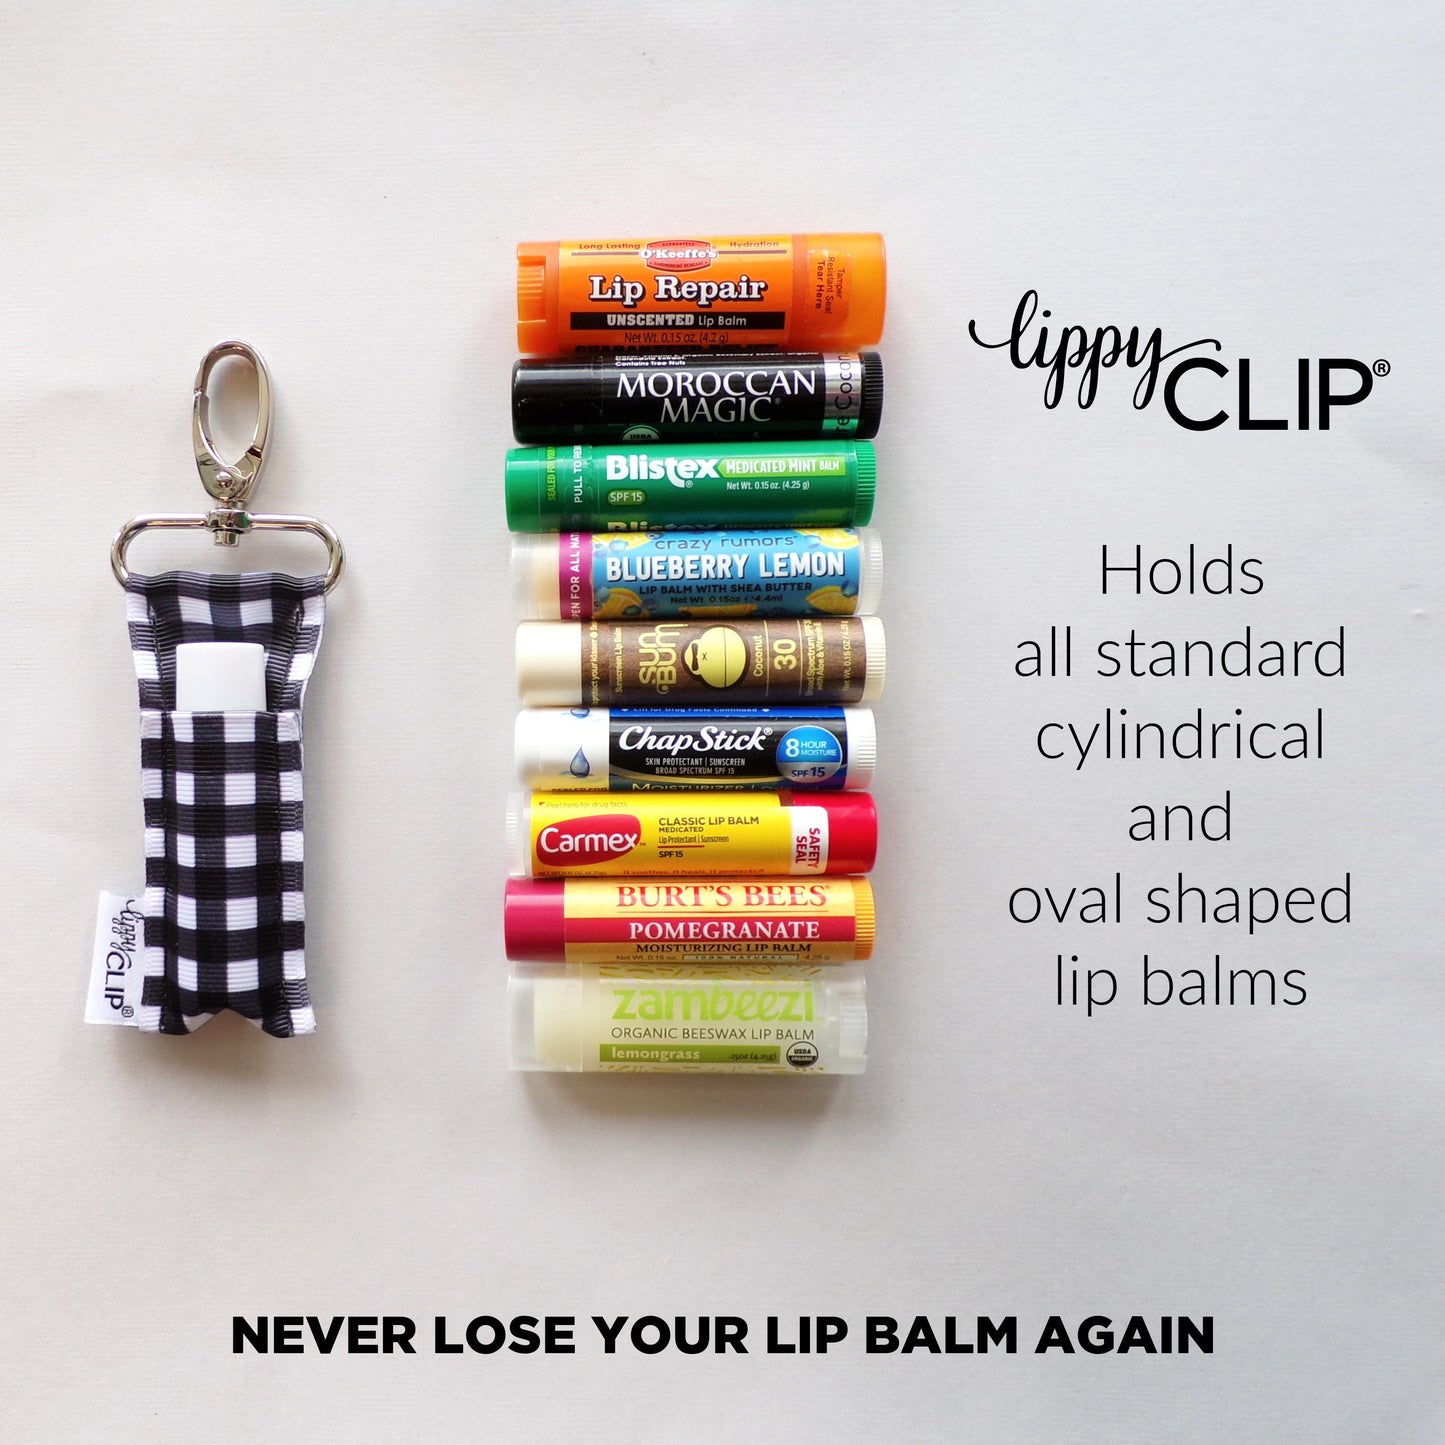 Healthcare Worker LippyClip® Lip Balm Holder